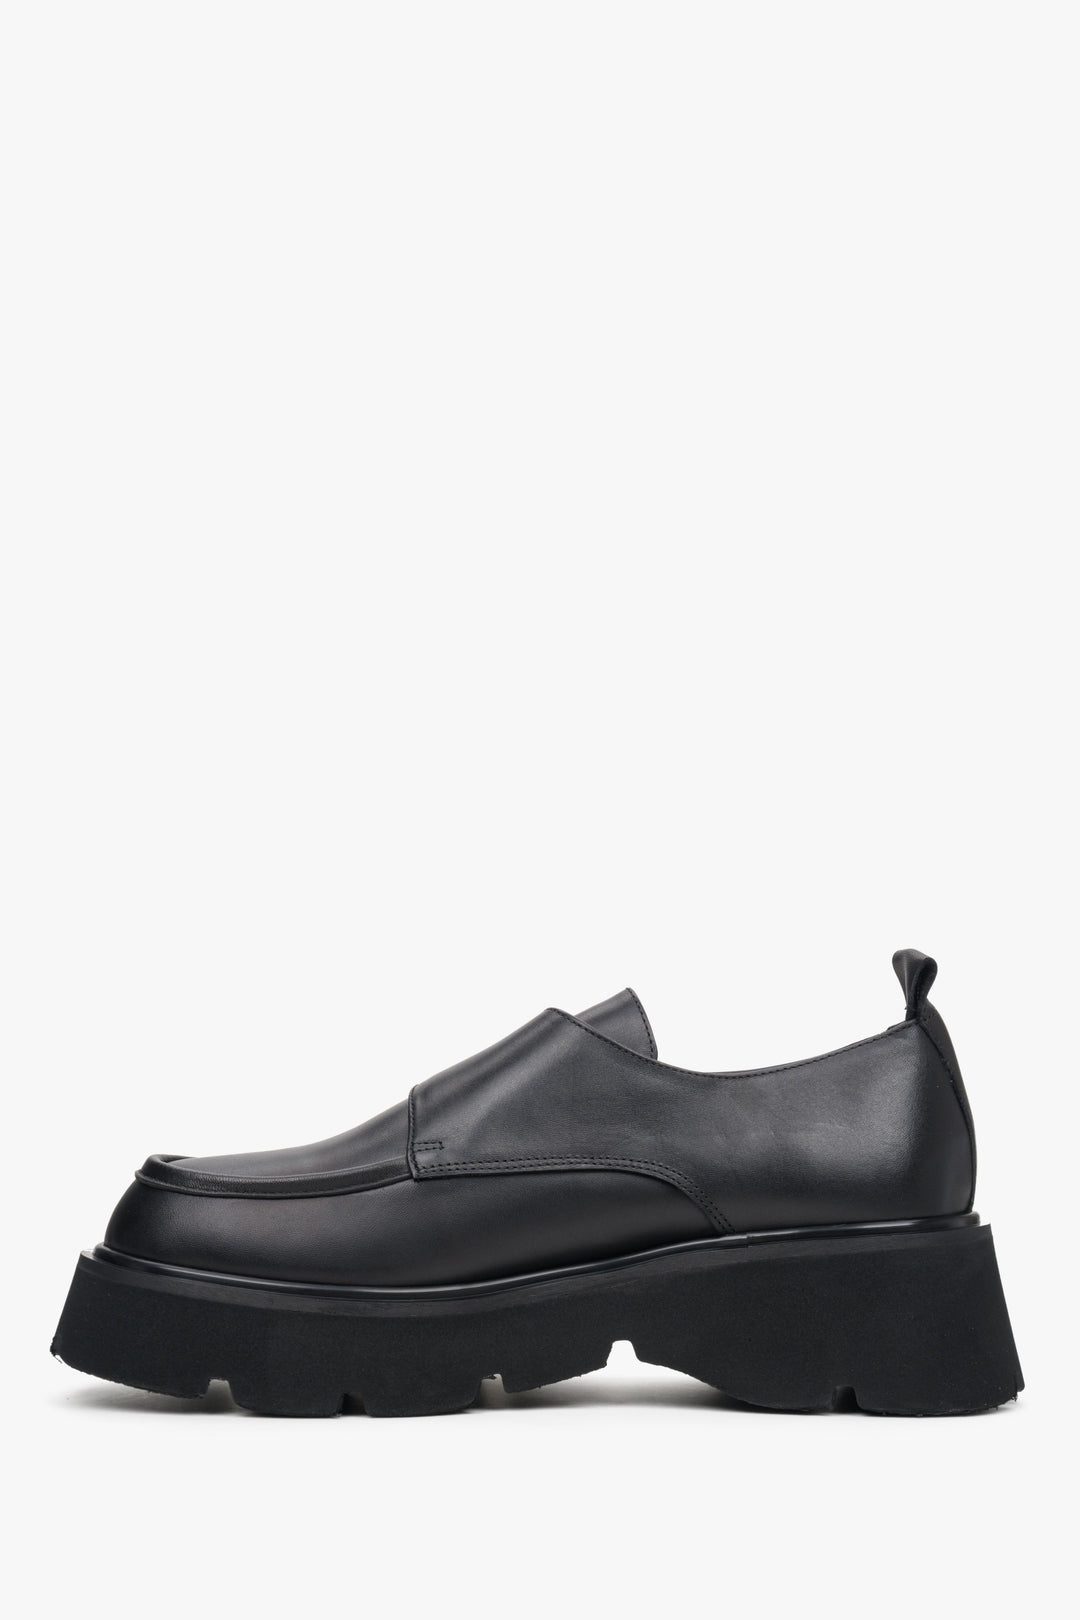 Black leather shoes by Estro - shoe profile.